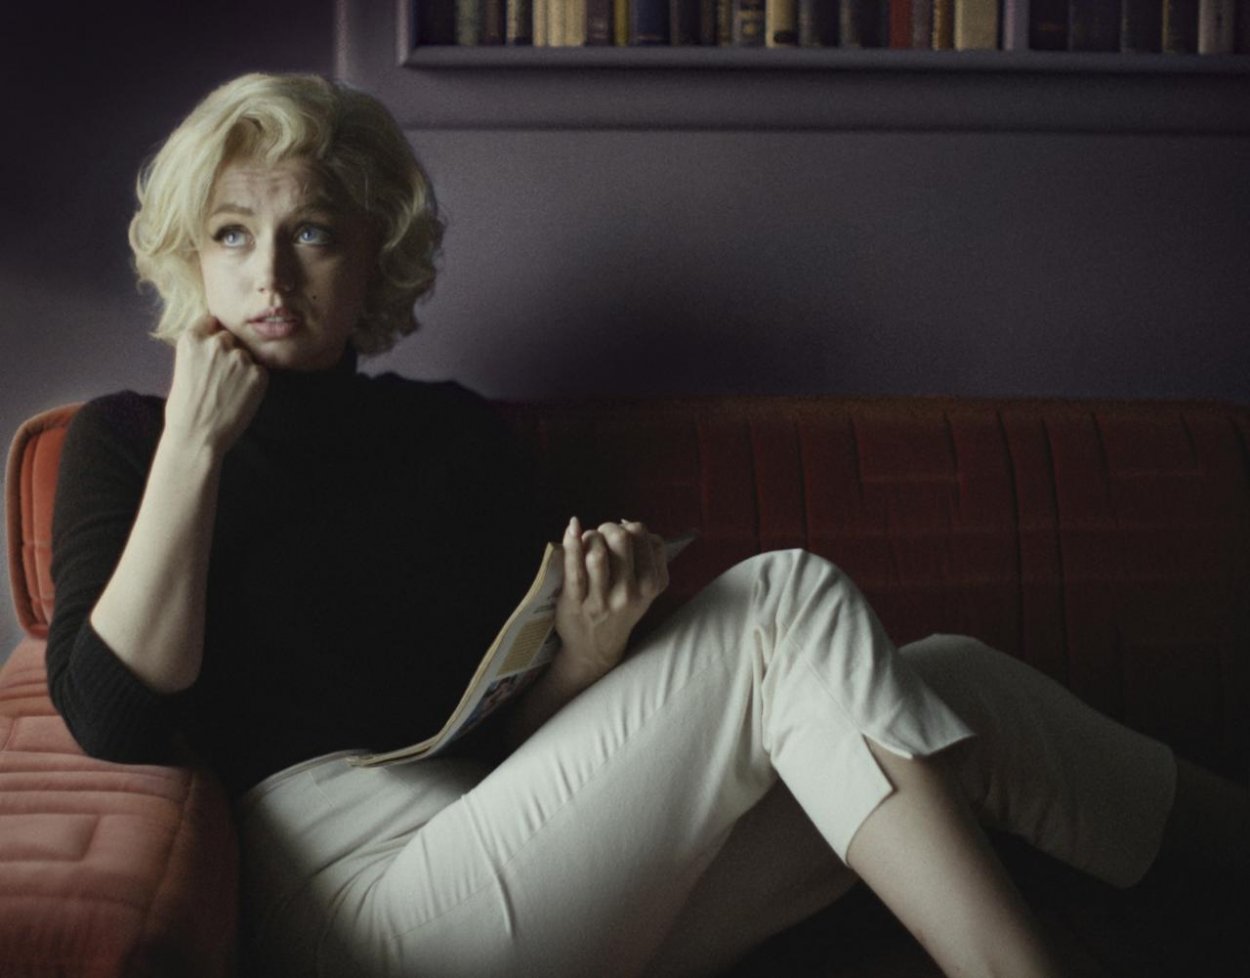 Blondínka a jej verzia príbehu Marilyn Monroe